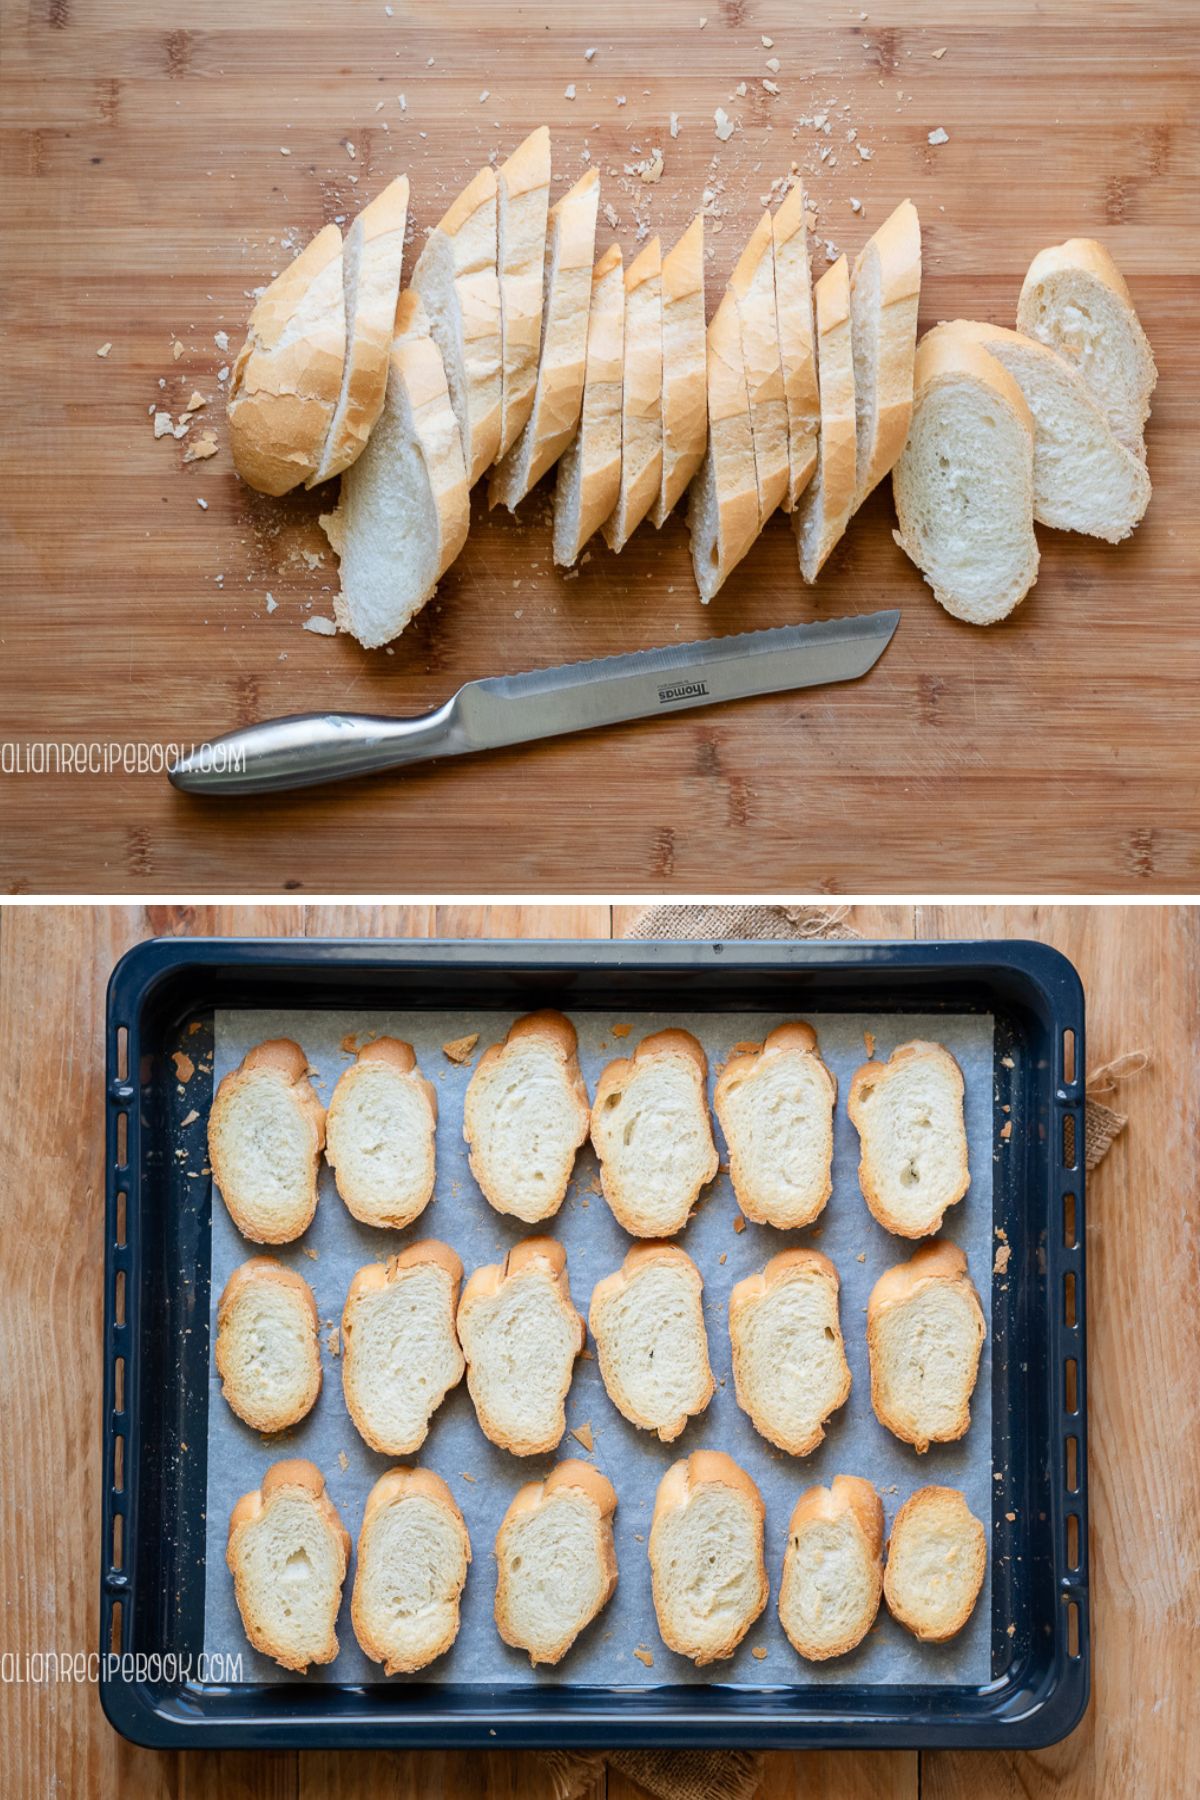 slice and toast bread